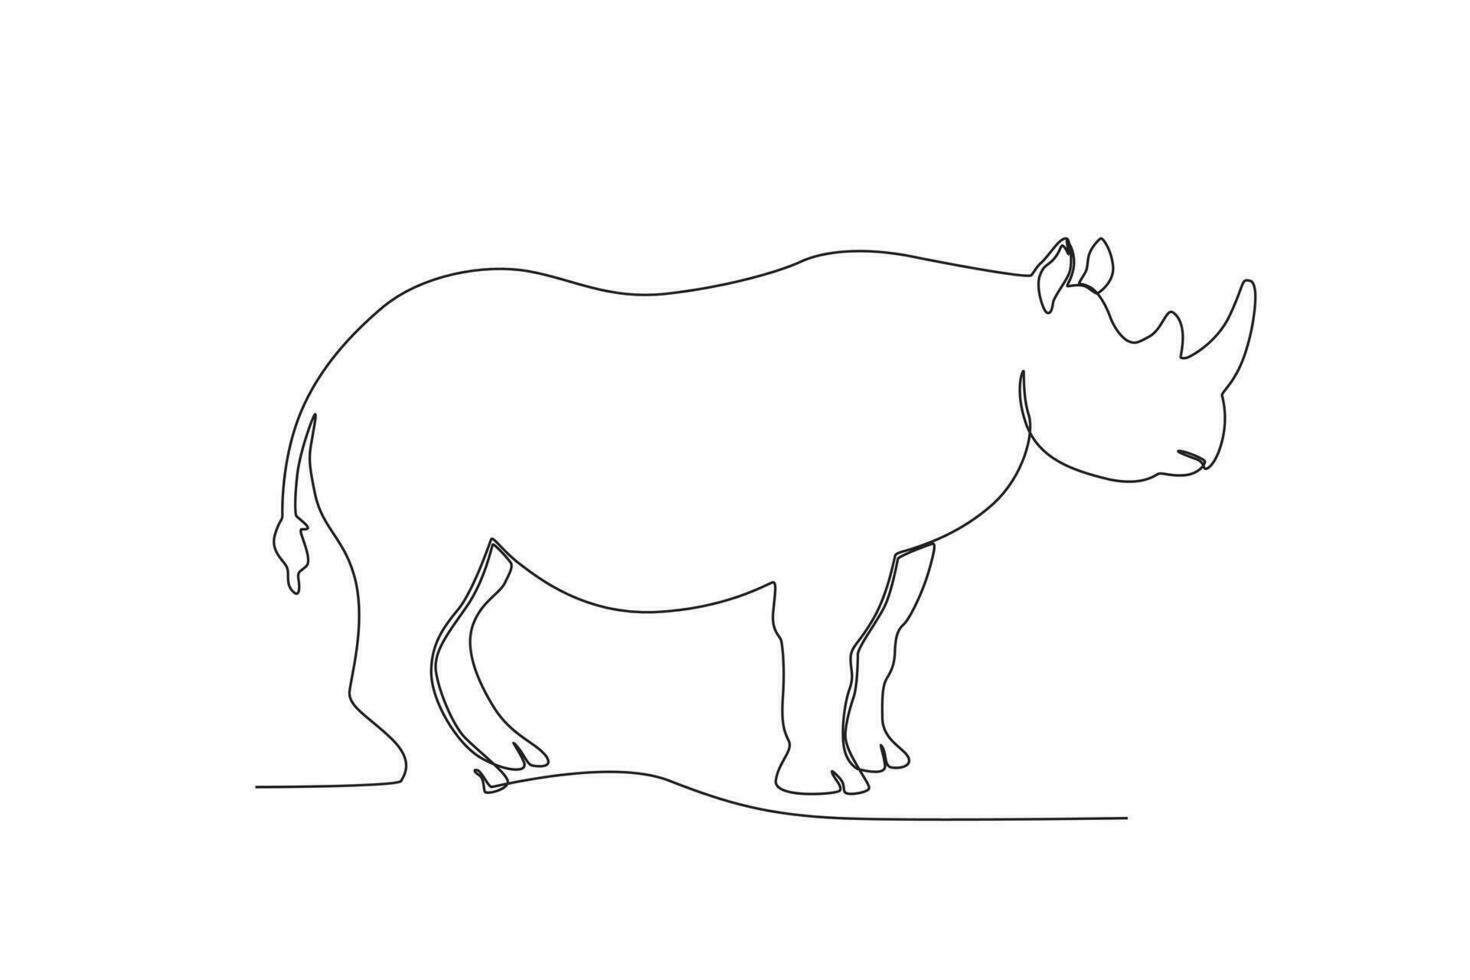 solteiro 1 linha desenhando do uma rinoceronte. contínuo linha desenhar Projeto gráfico vetor ilustração.